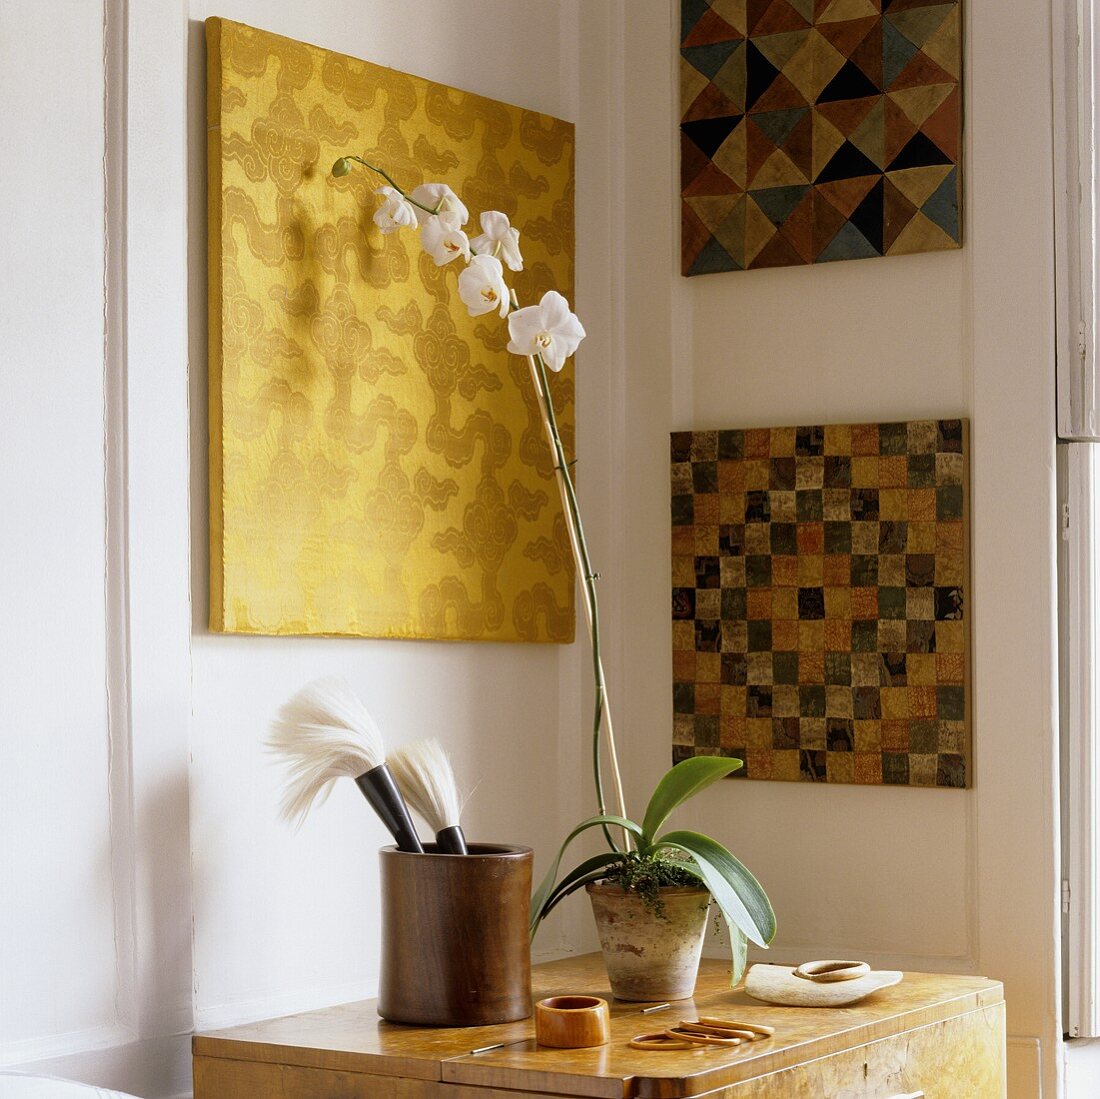 Geometrisches Muster auf Bildtafel in Wohnraumecke und weiße Orchidee im Topf